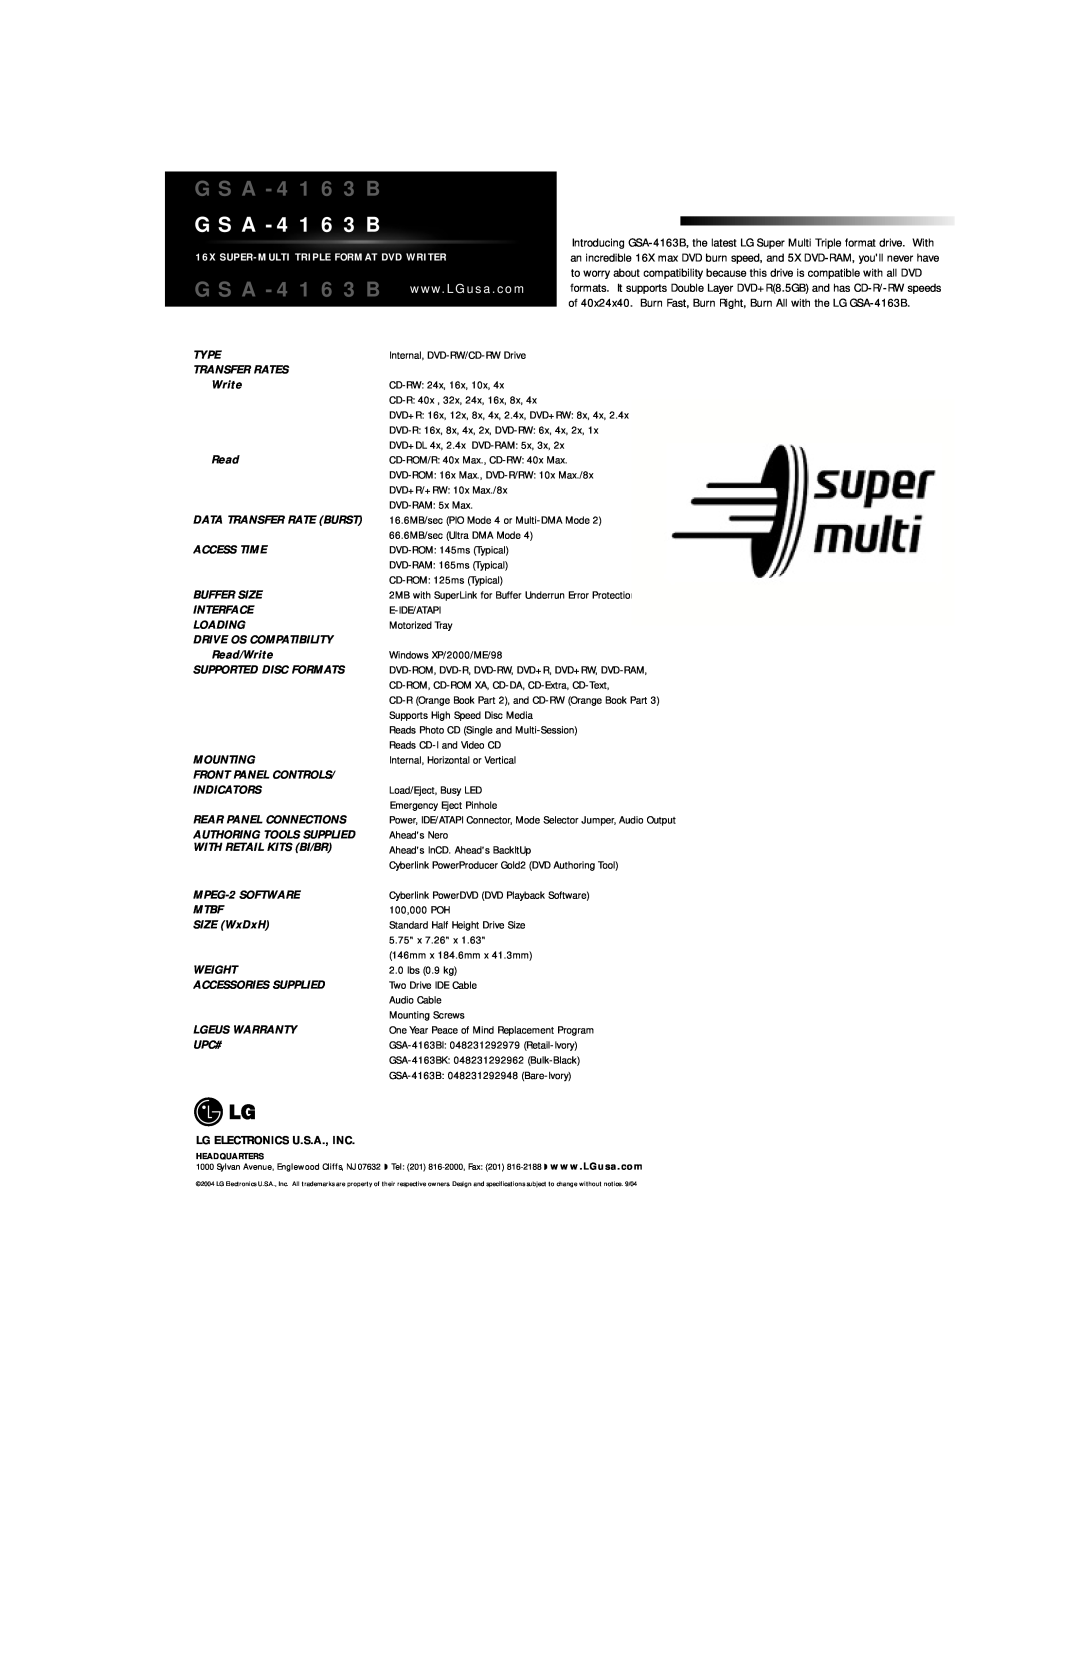 LG Electronics GSA-4163B manual w w w. L G u s a . c o m 